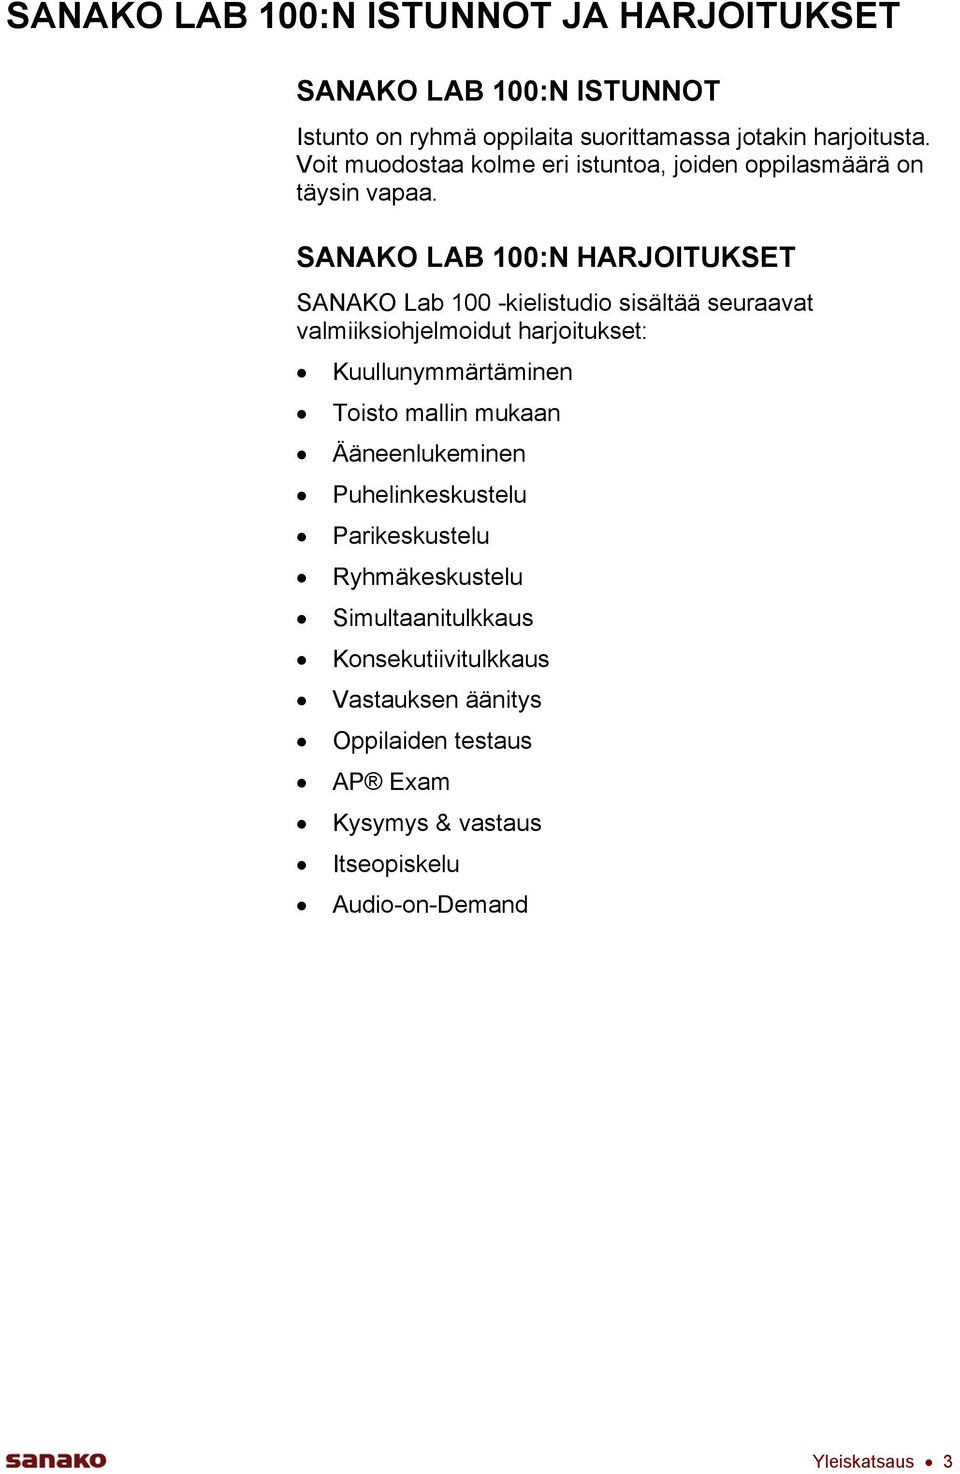 SANAKO LAB 100:N HARJOITUKSET SANAKO Lab 100 -kielistudio sisältää seuraavat valmiiksiohjelmoidut harjoitukset: Kuullunymmärtäminen Toisto